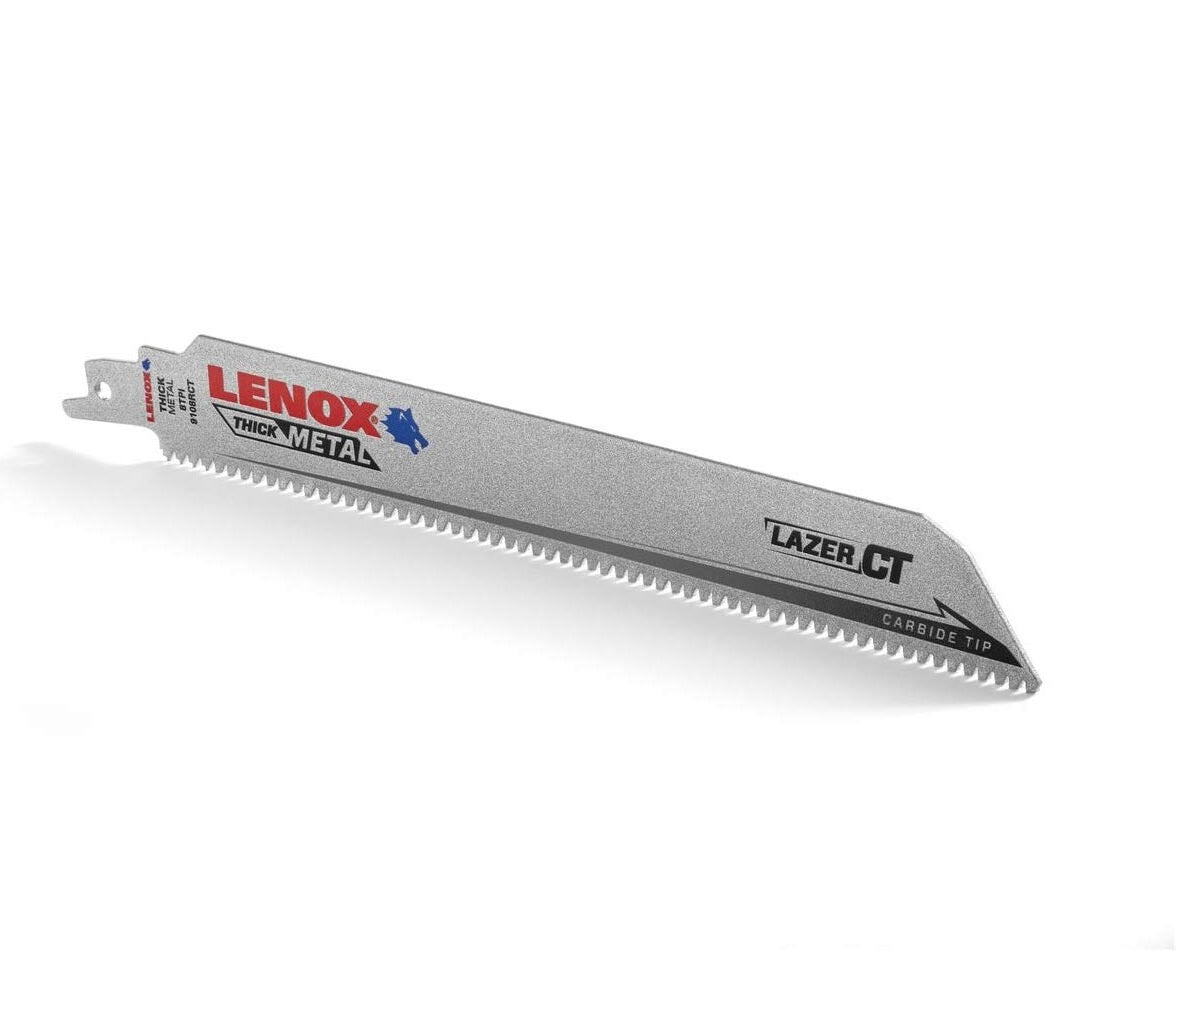 Lenox 2014224 8 TPI Carbide Tip Reciprocating Saw Blade